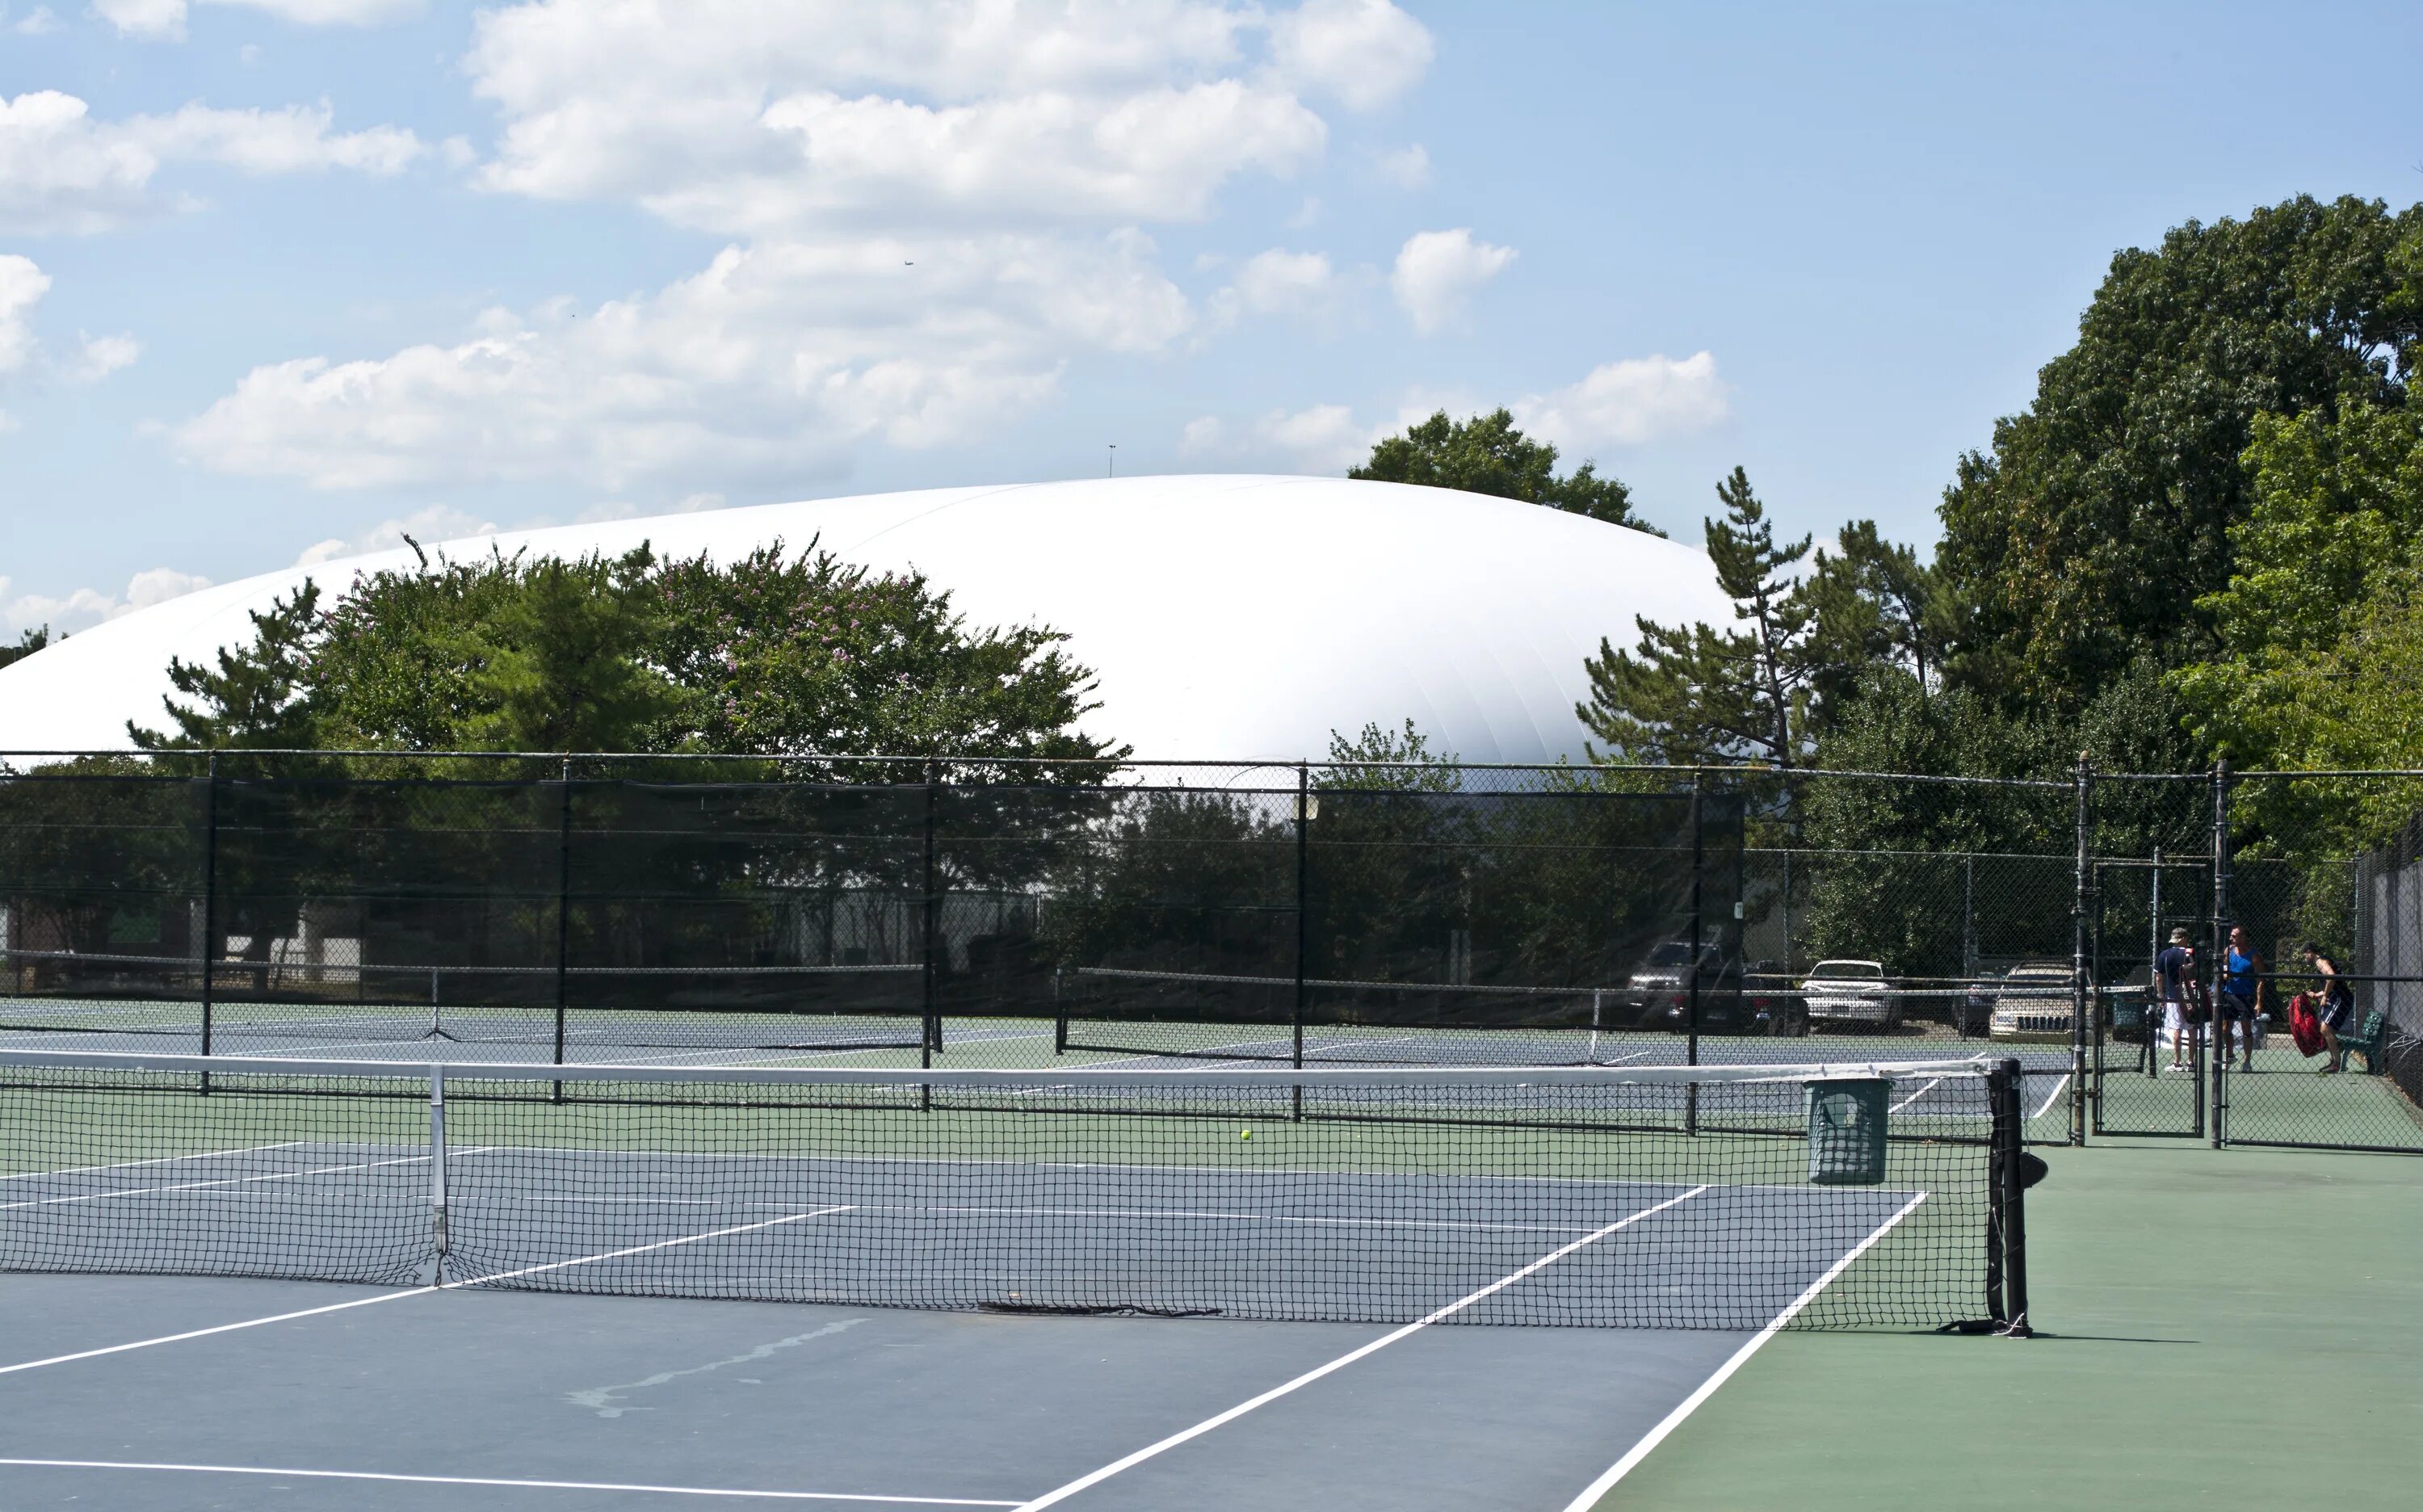 Tennis centre. Теннисные корты в Тбилиси. Имперский колледж теннисный корт. Теннисный корт Toronto. Теннисные корты Ереван.